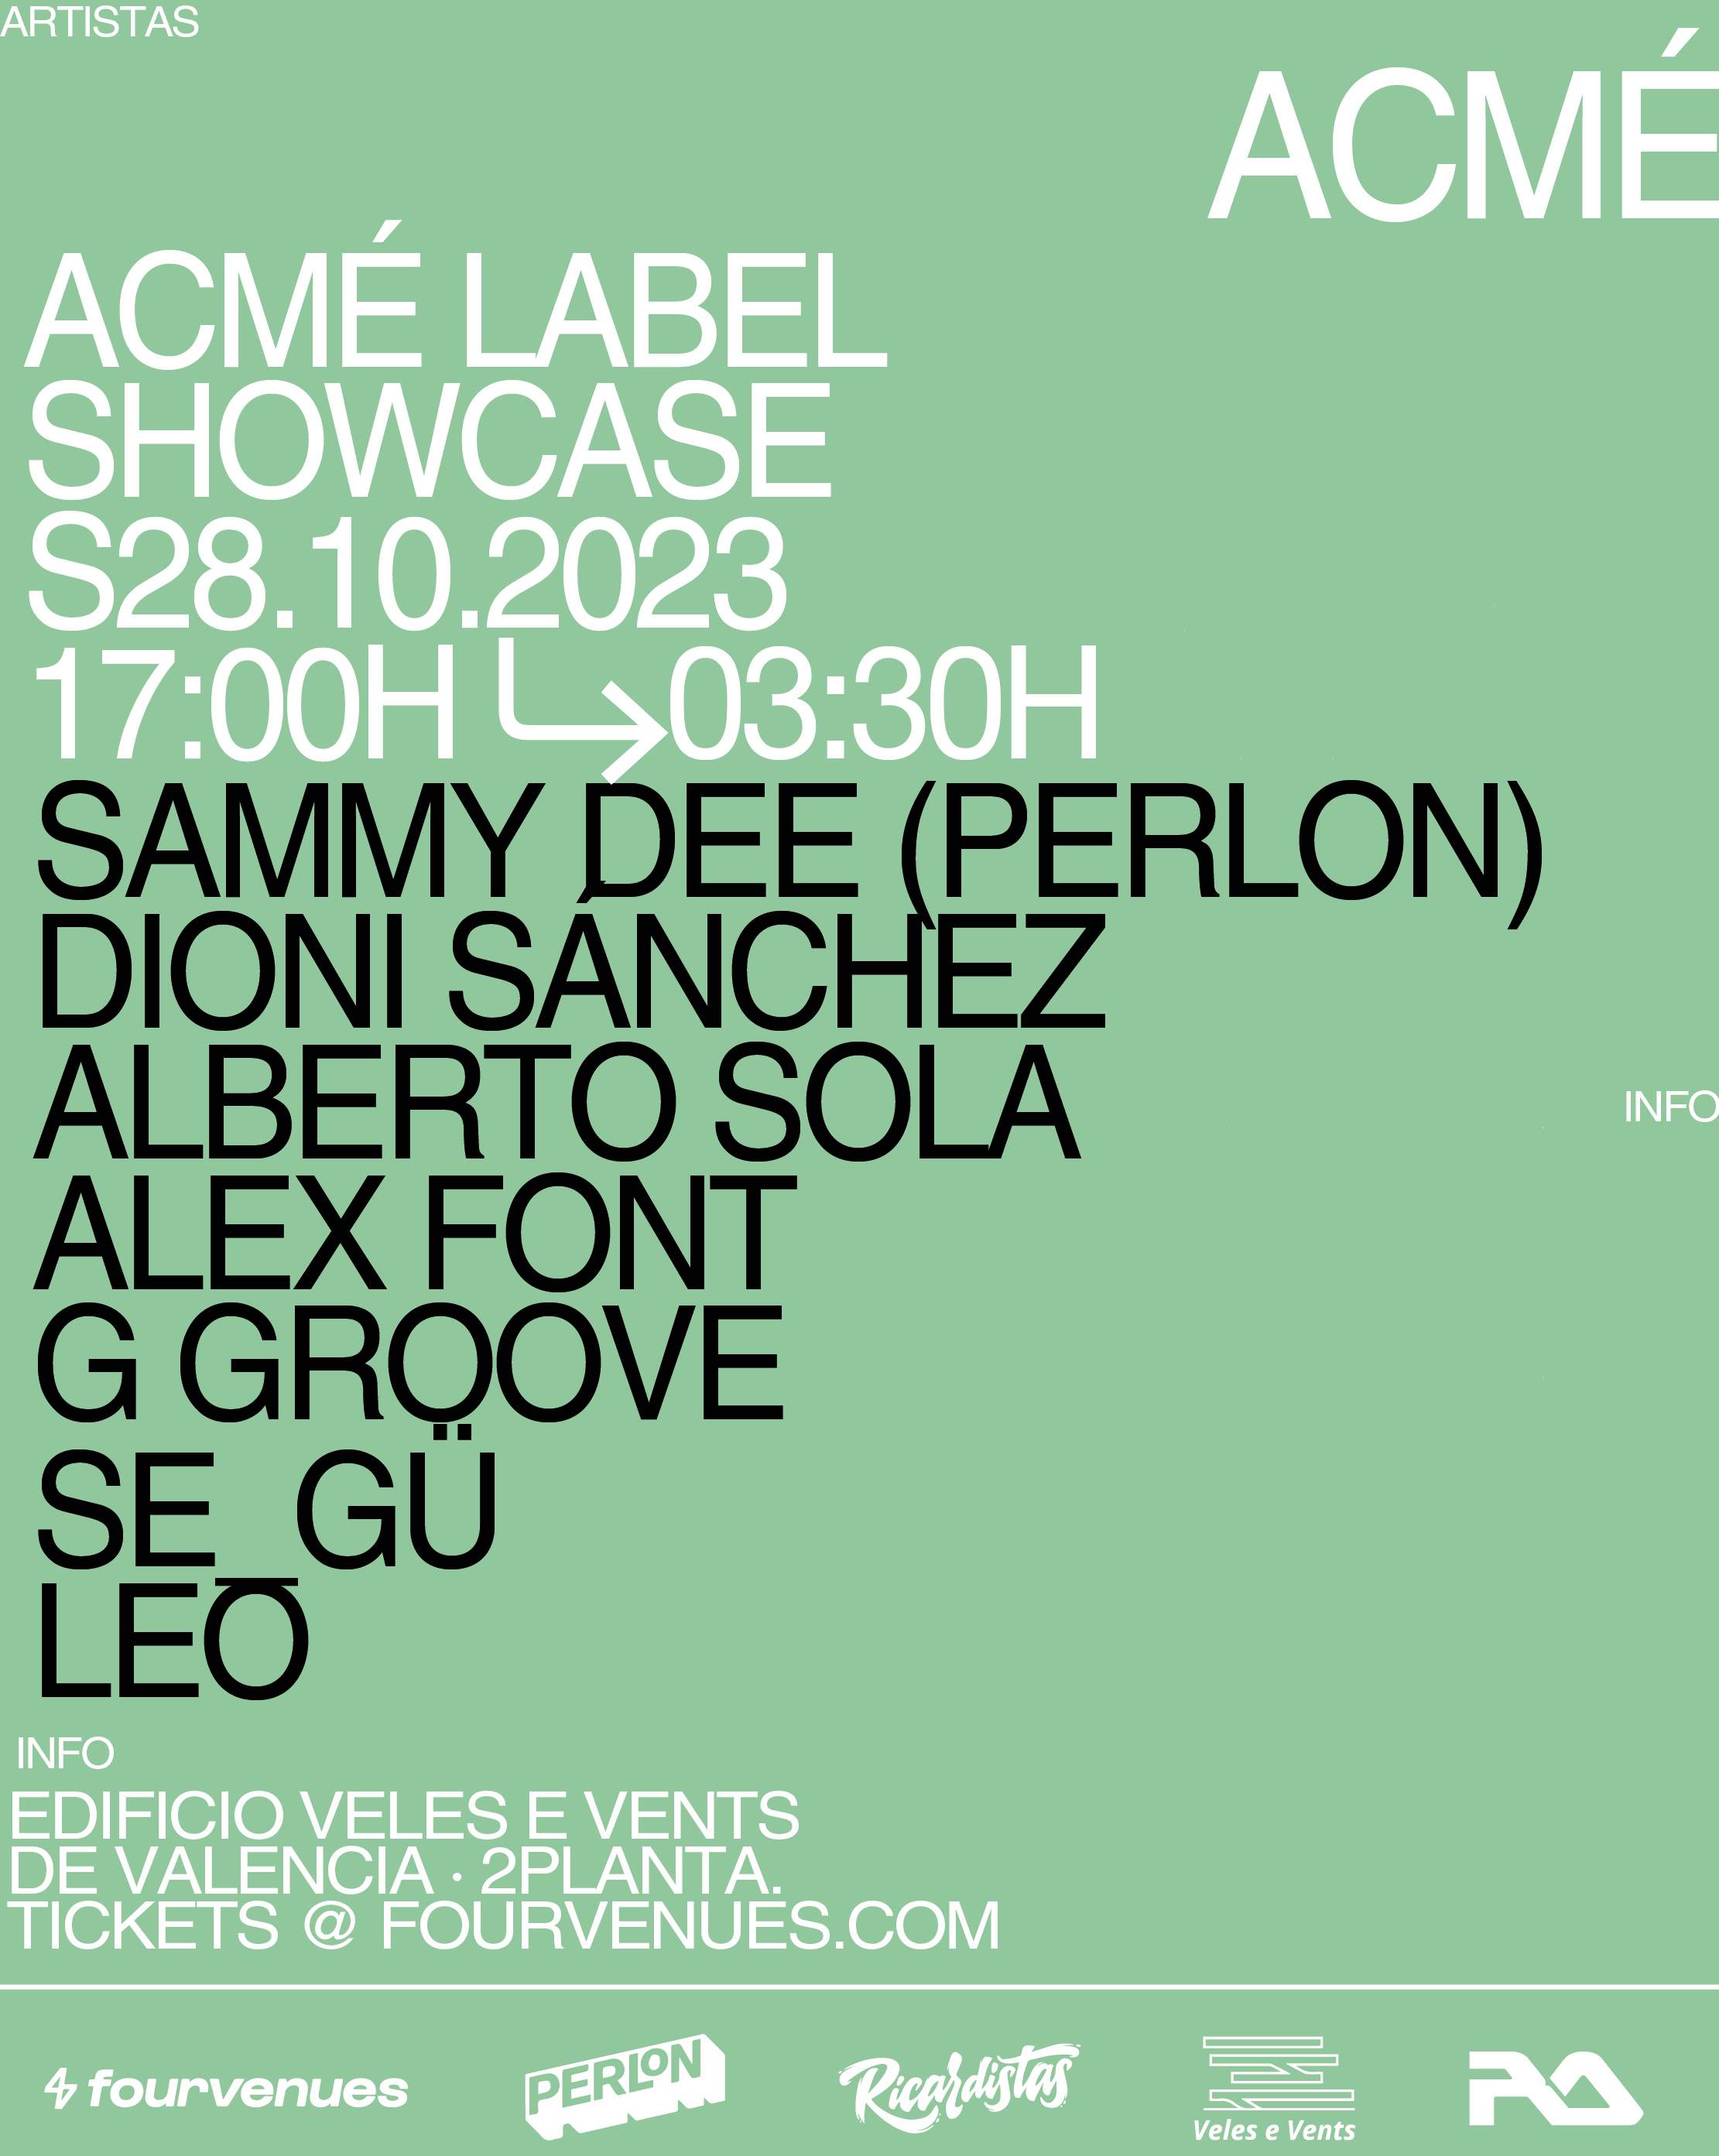 Acmé label showcase with Sammy Dee (PERLON) - フライヤー表